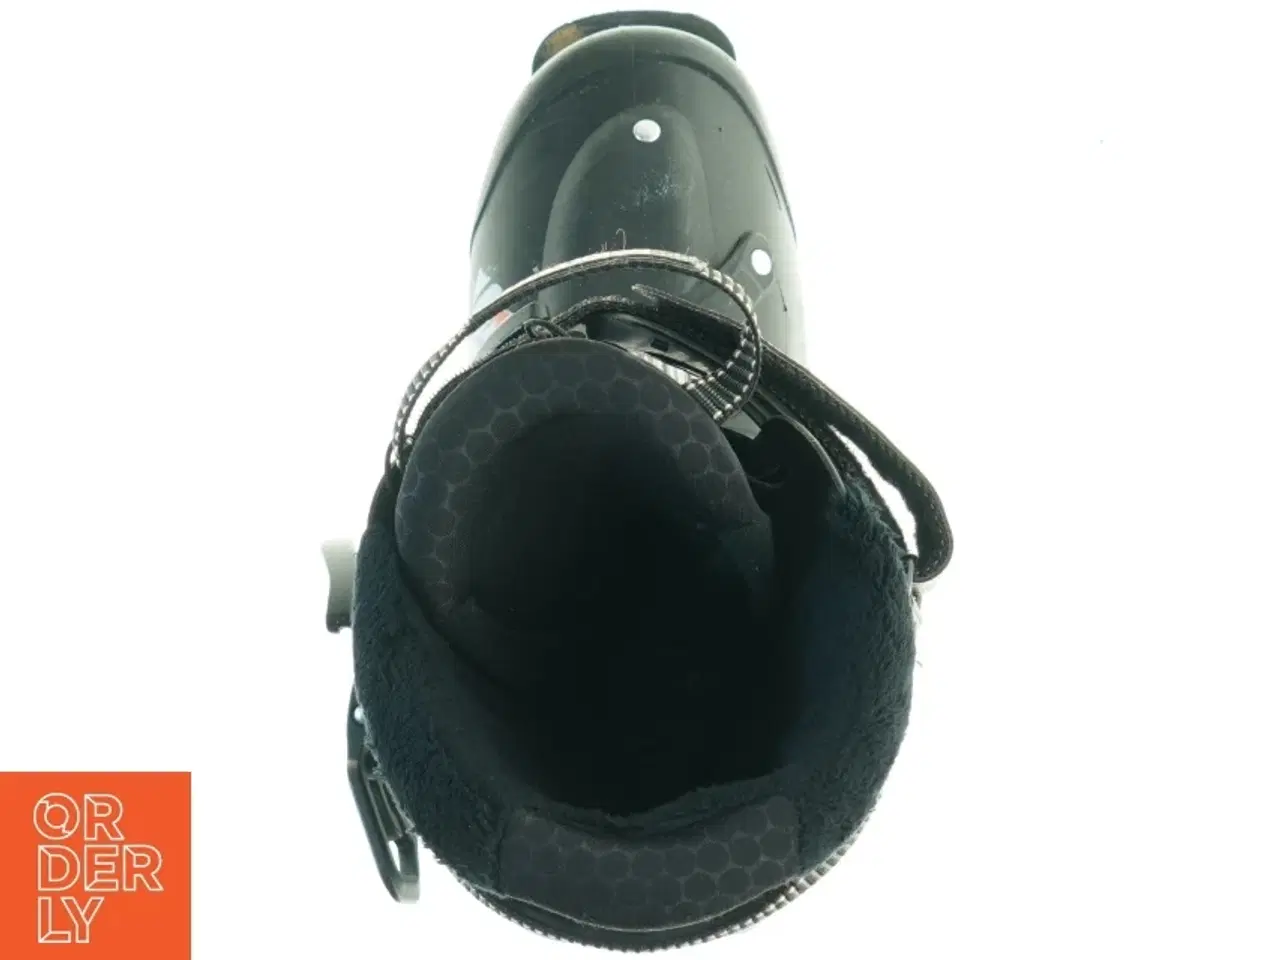 Billede 3 - Salomon SPK skistøvler med taske fra Salomon (str. 307 mm)